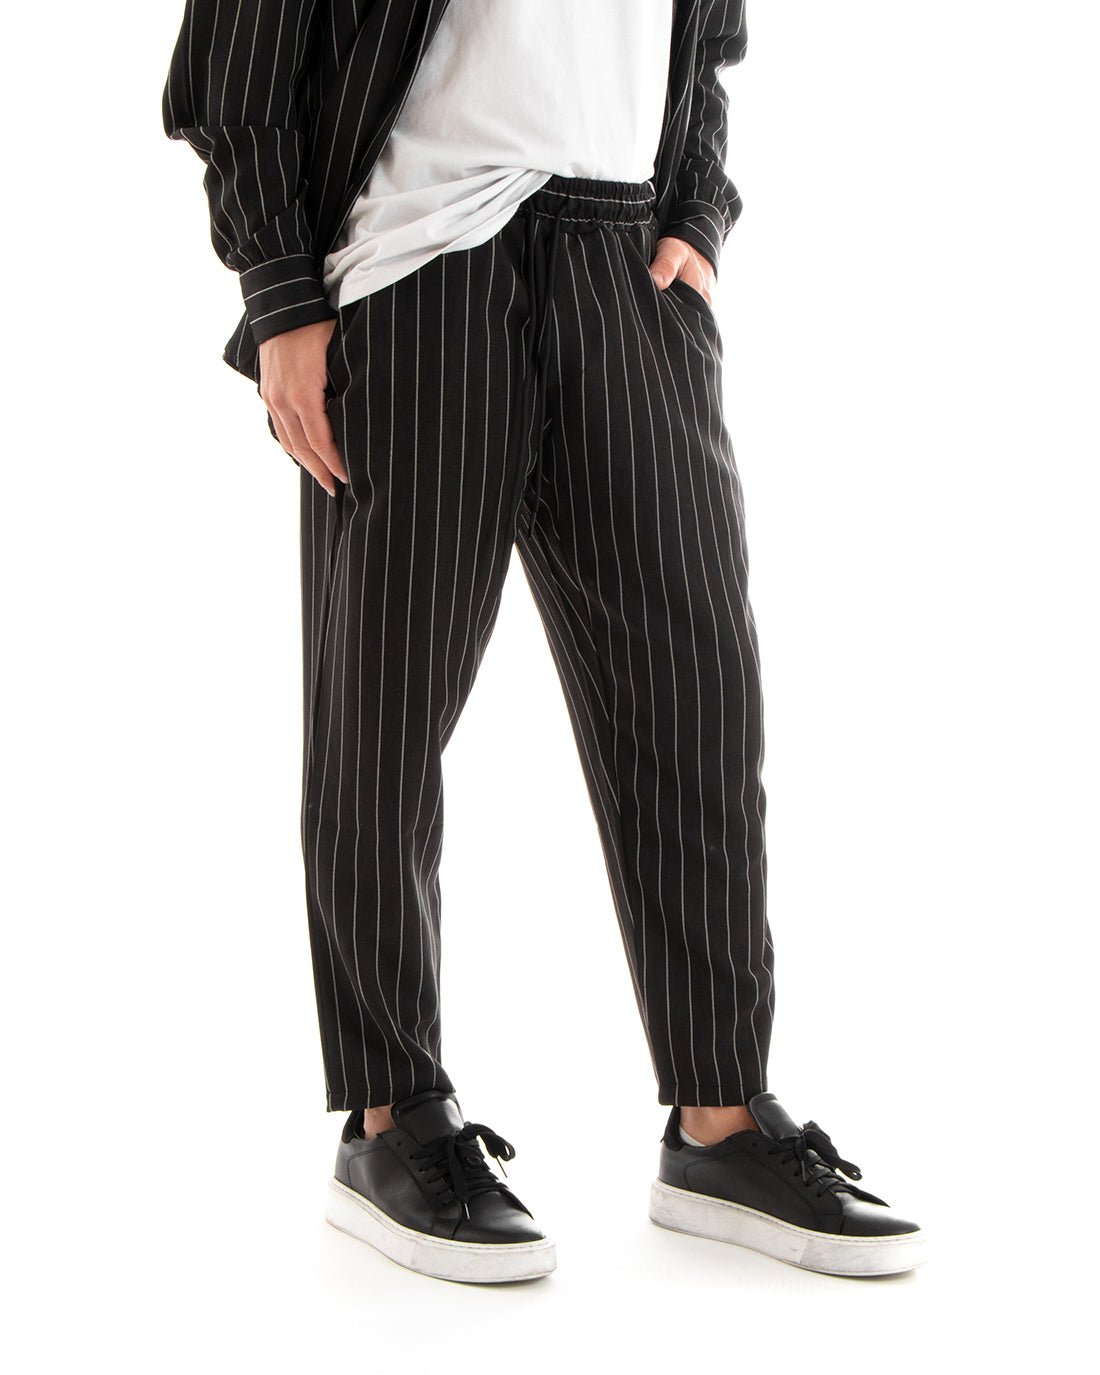 Completo Set Coordinato Uomo Viscosa Camicia Con Colletto Pantaloni Outfit Rigato Gessato Nero GIOSAL-OU2267A